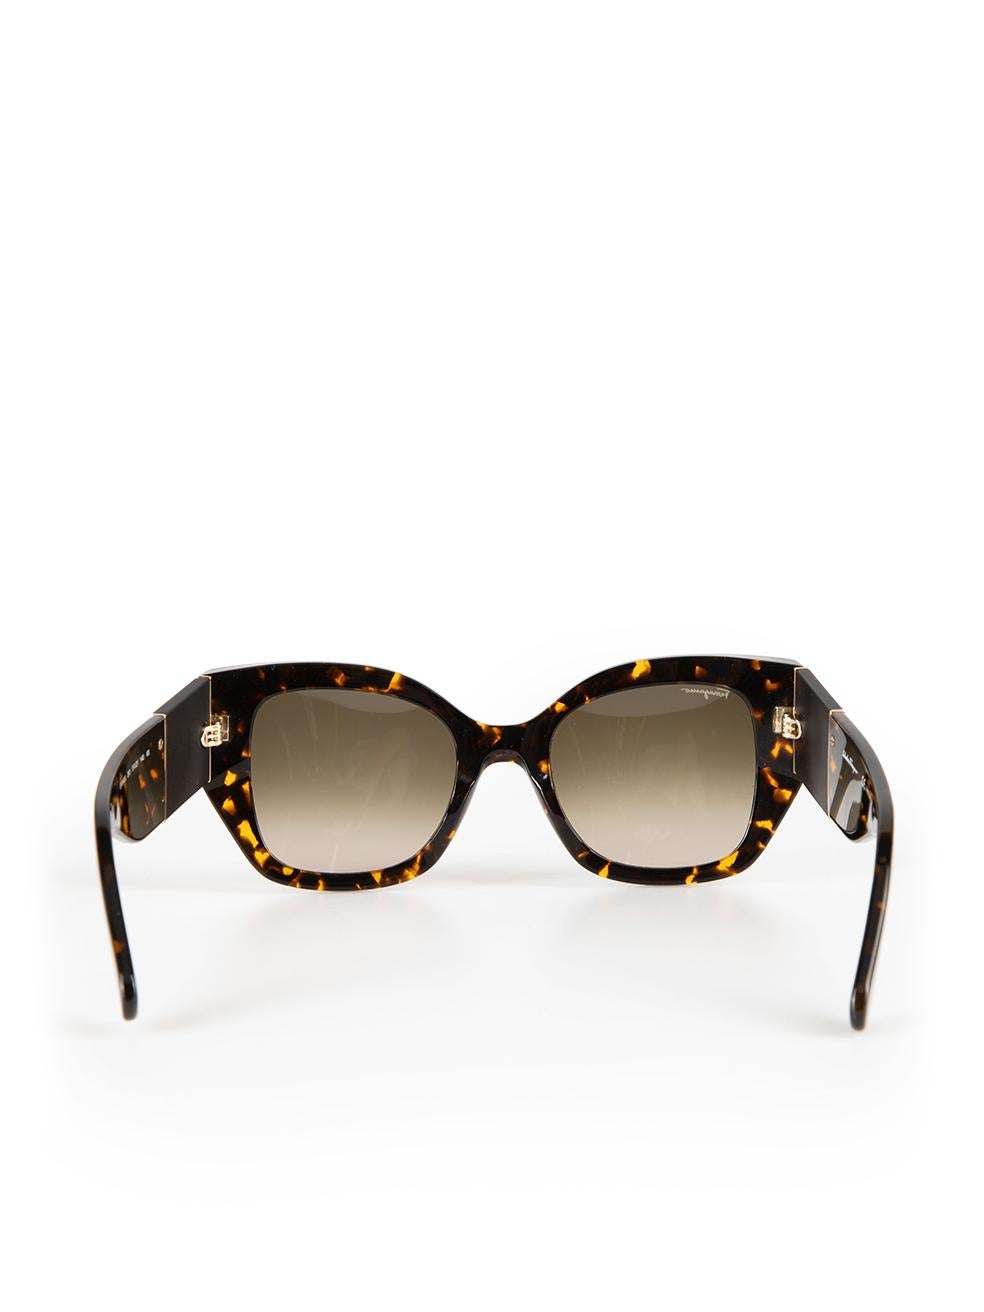 Salvatore Ferragamo Vintage Tortoise Square Sunglasses In New Condition For Sale In London, GB